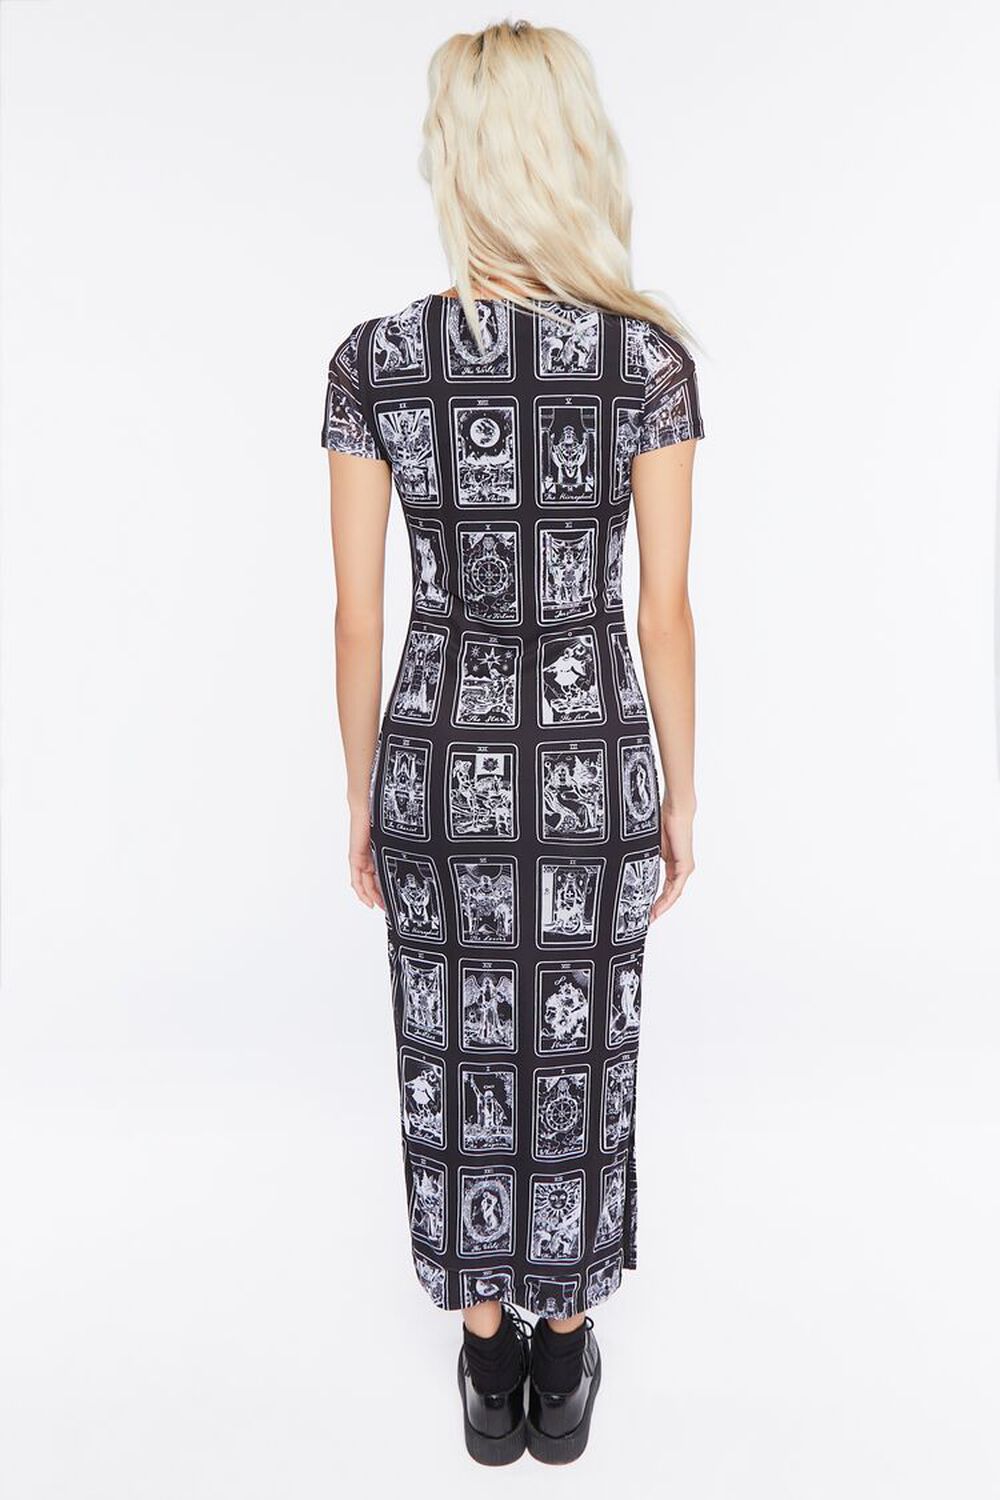 BLACK/MULTI Tarot Card Print Mesh Midi Dress, image 3